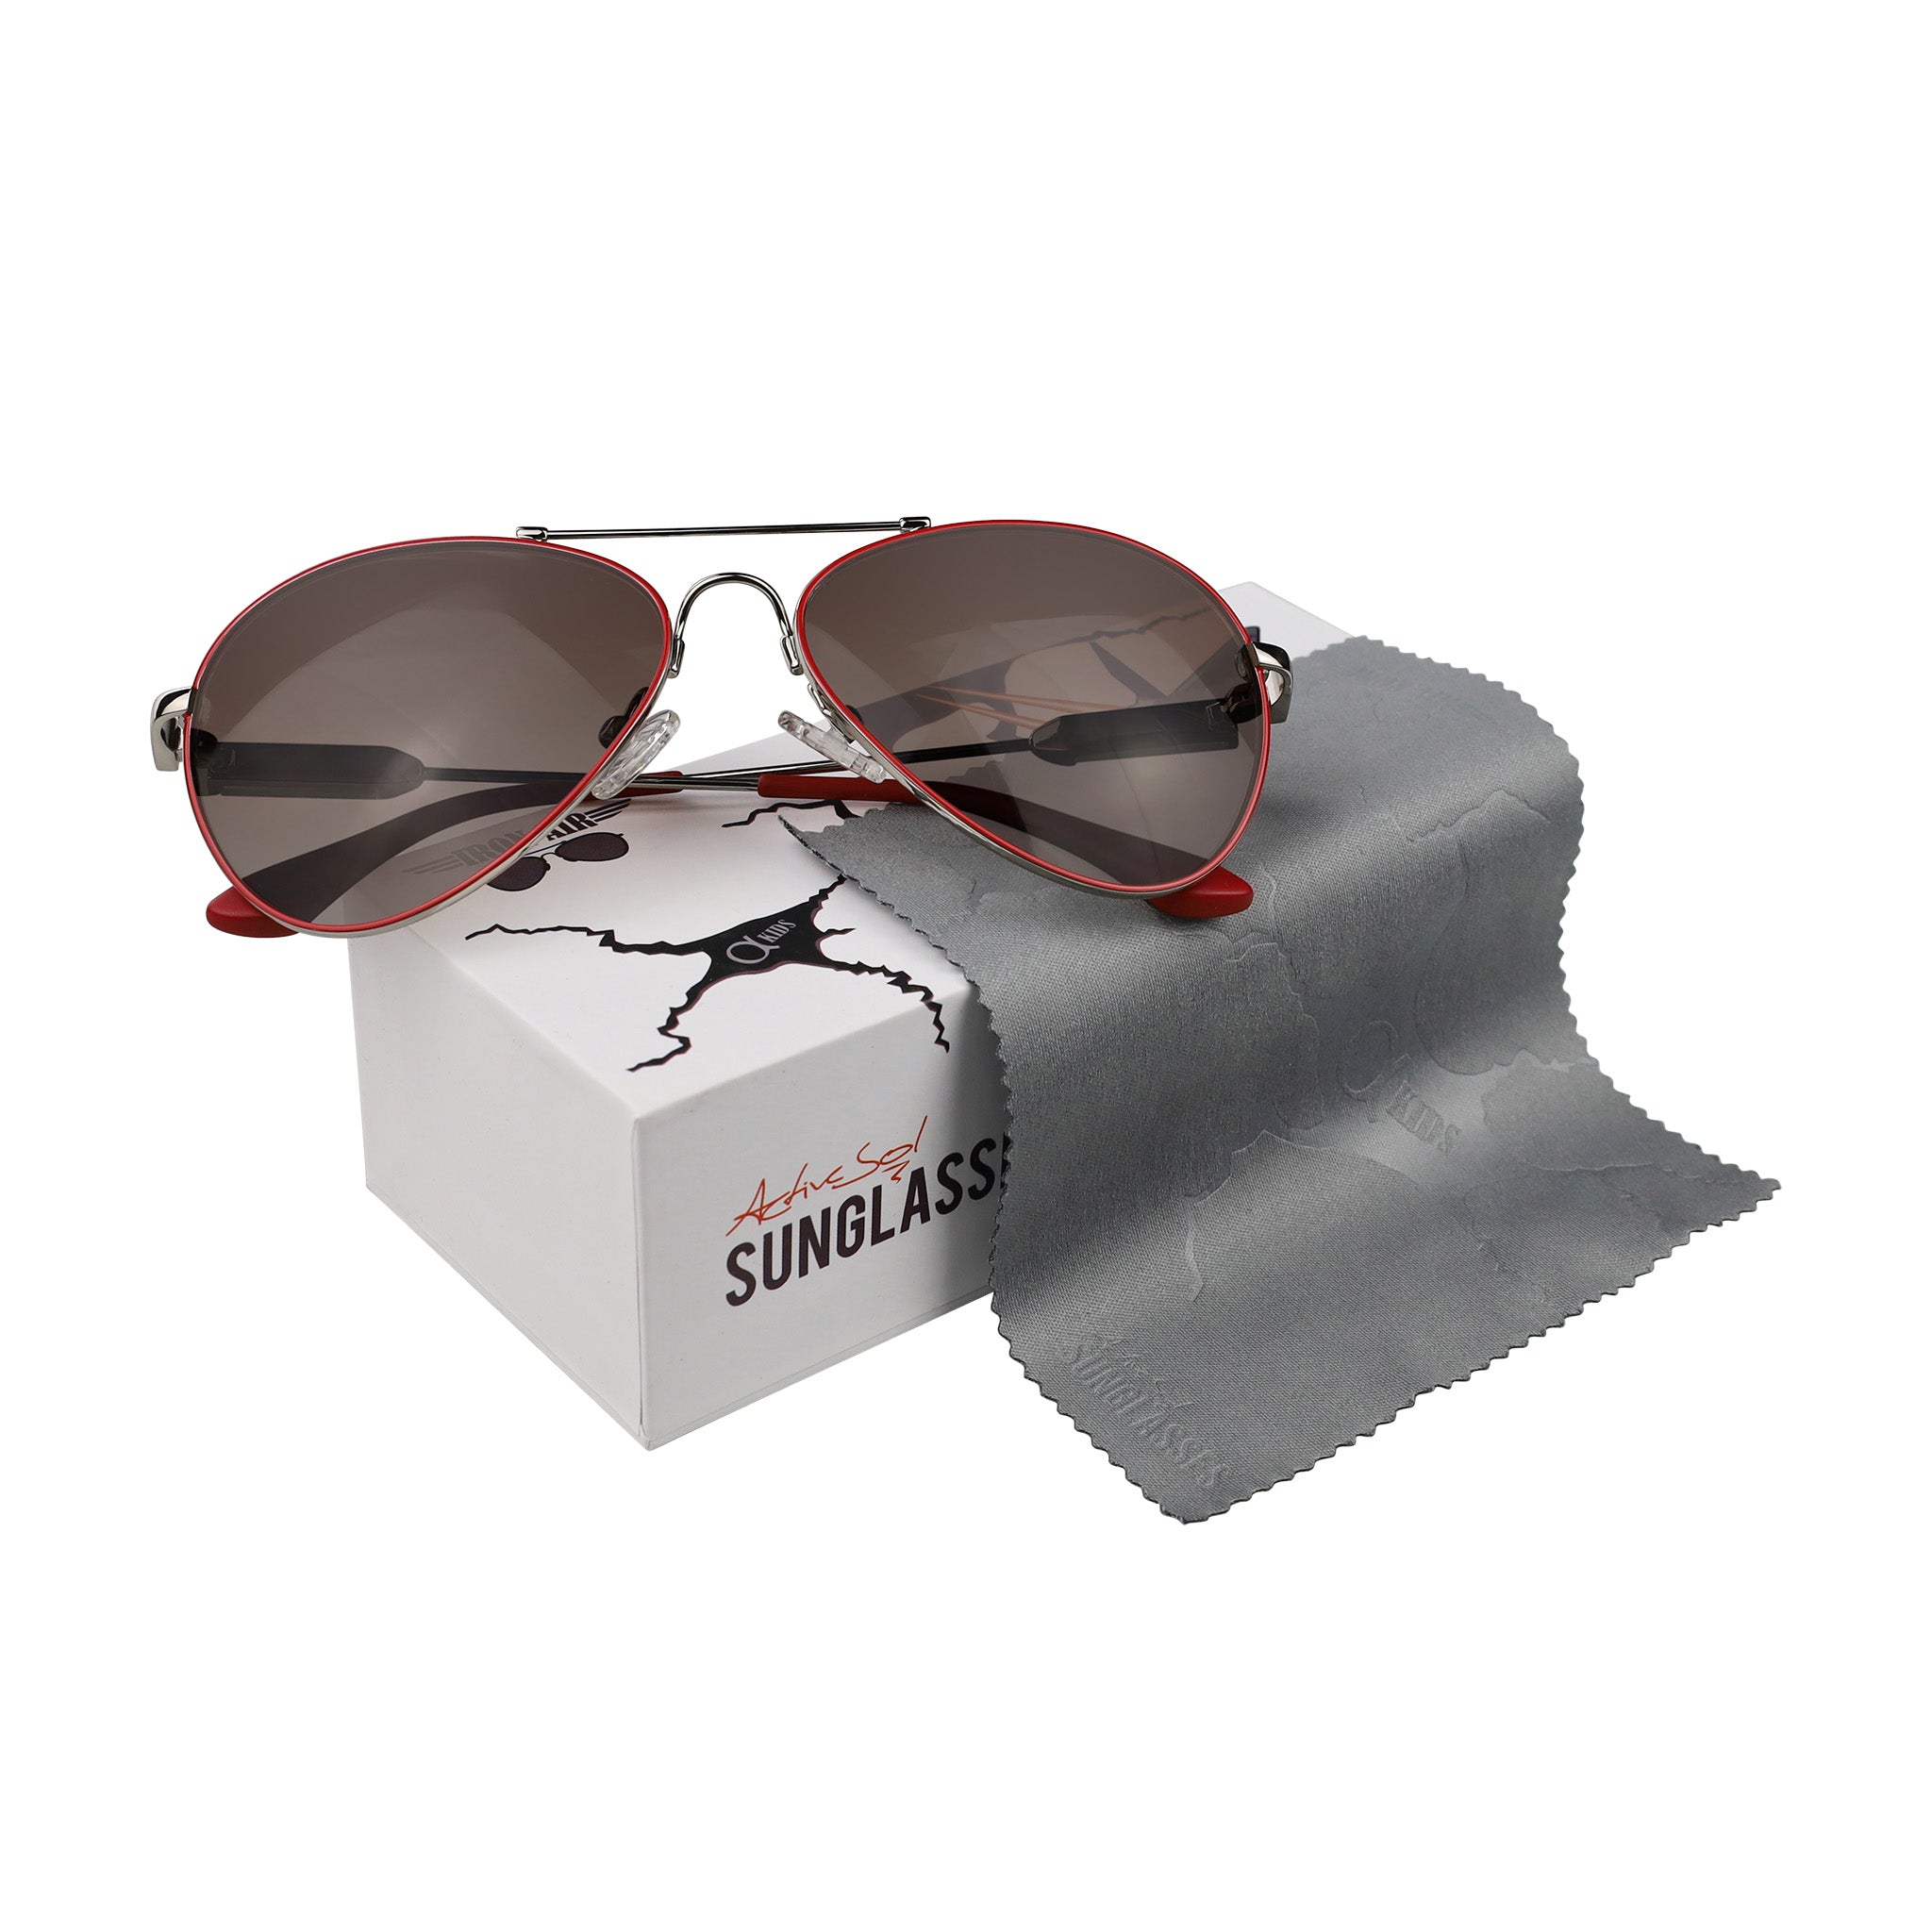 Kinder-Sonnenbrille Iron Air, 6 - 12 Jahre, Piloten-Design , Rot | Braune Gläser